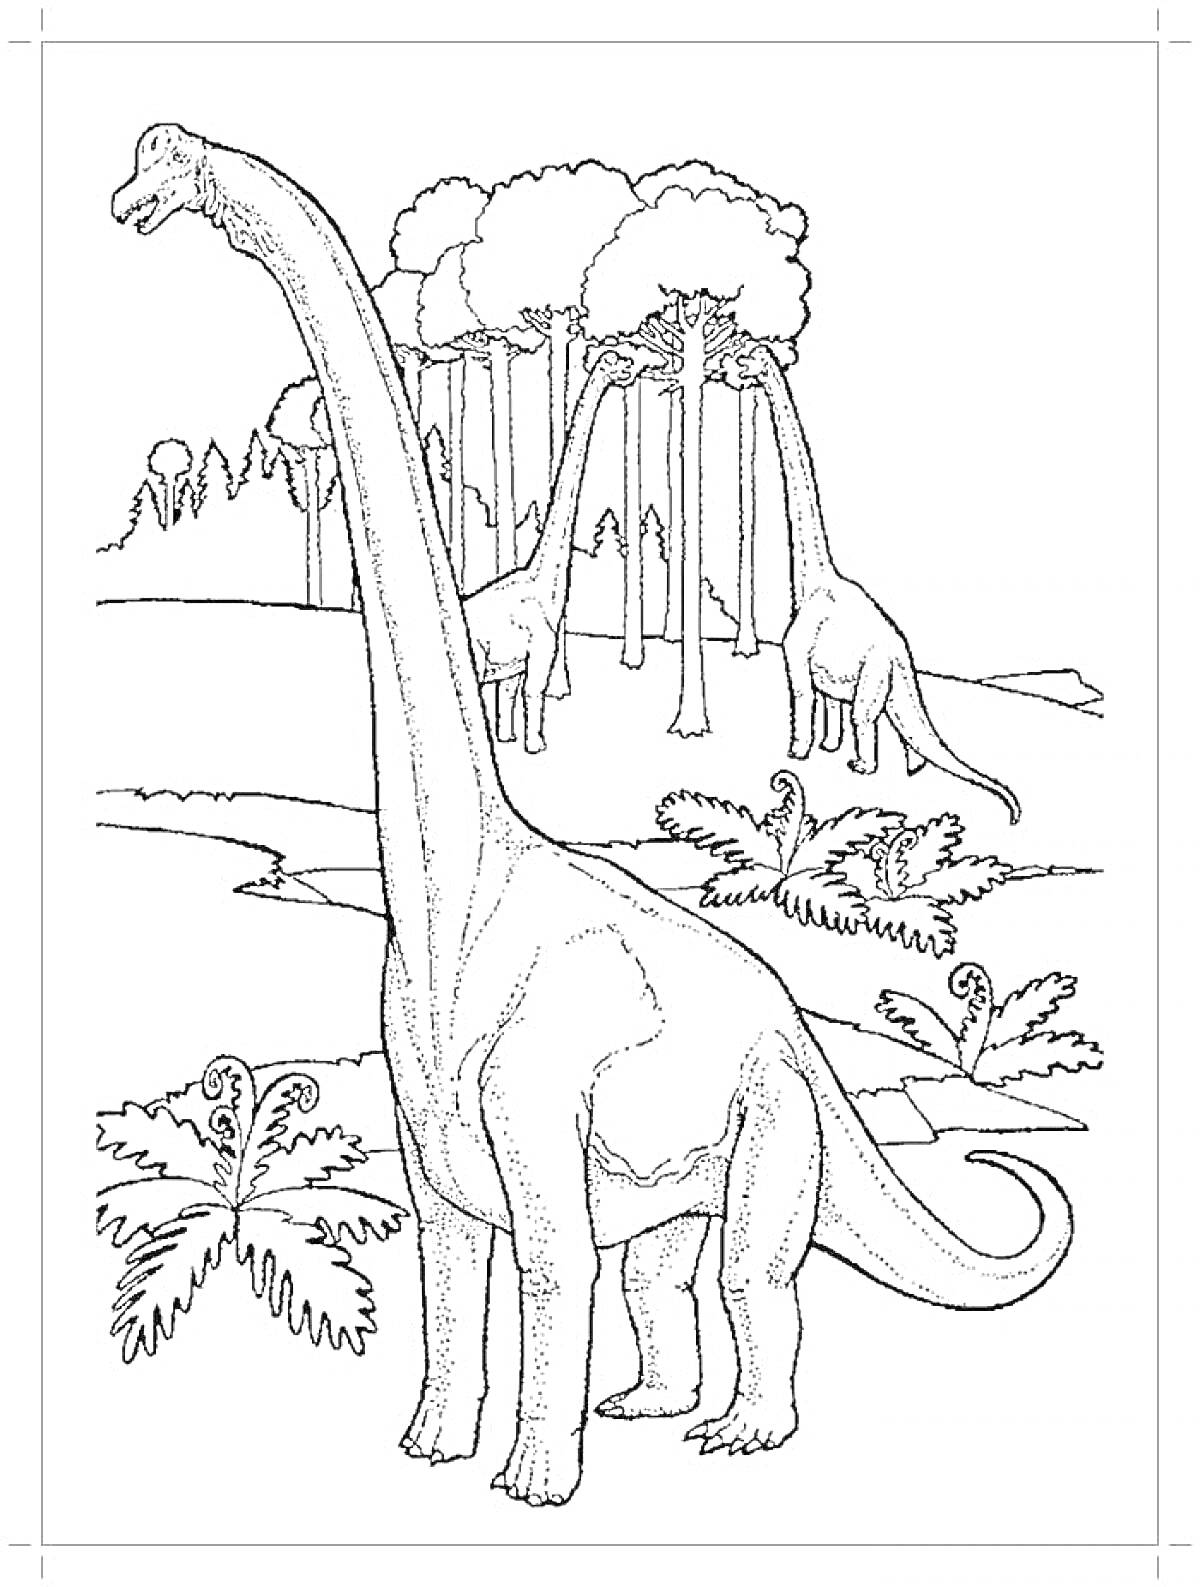 Длинношеие динозавры на фоне леса с папоротниками